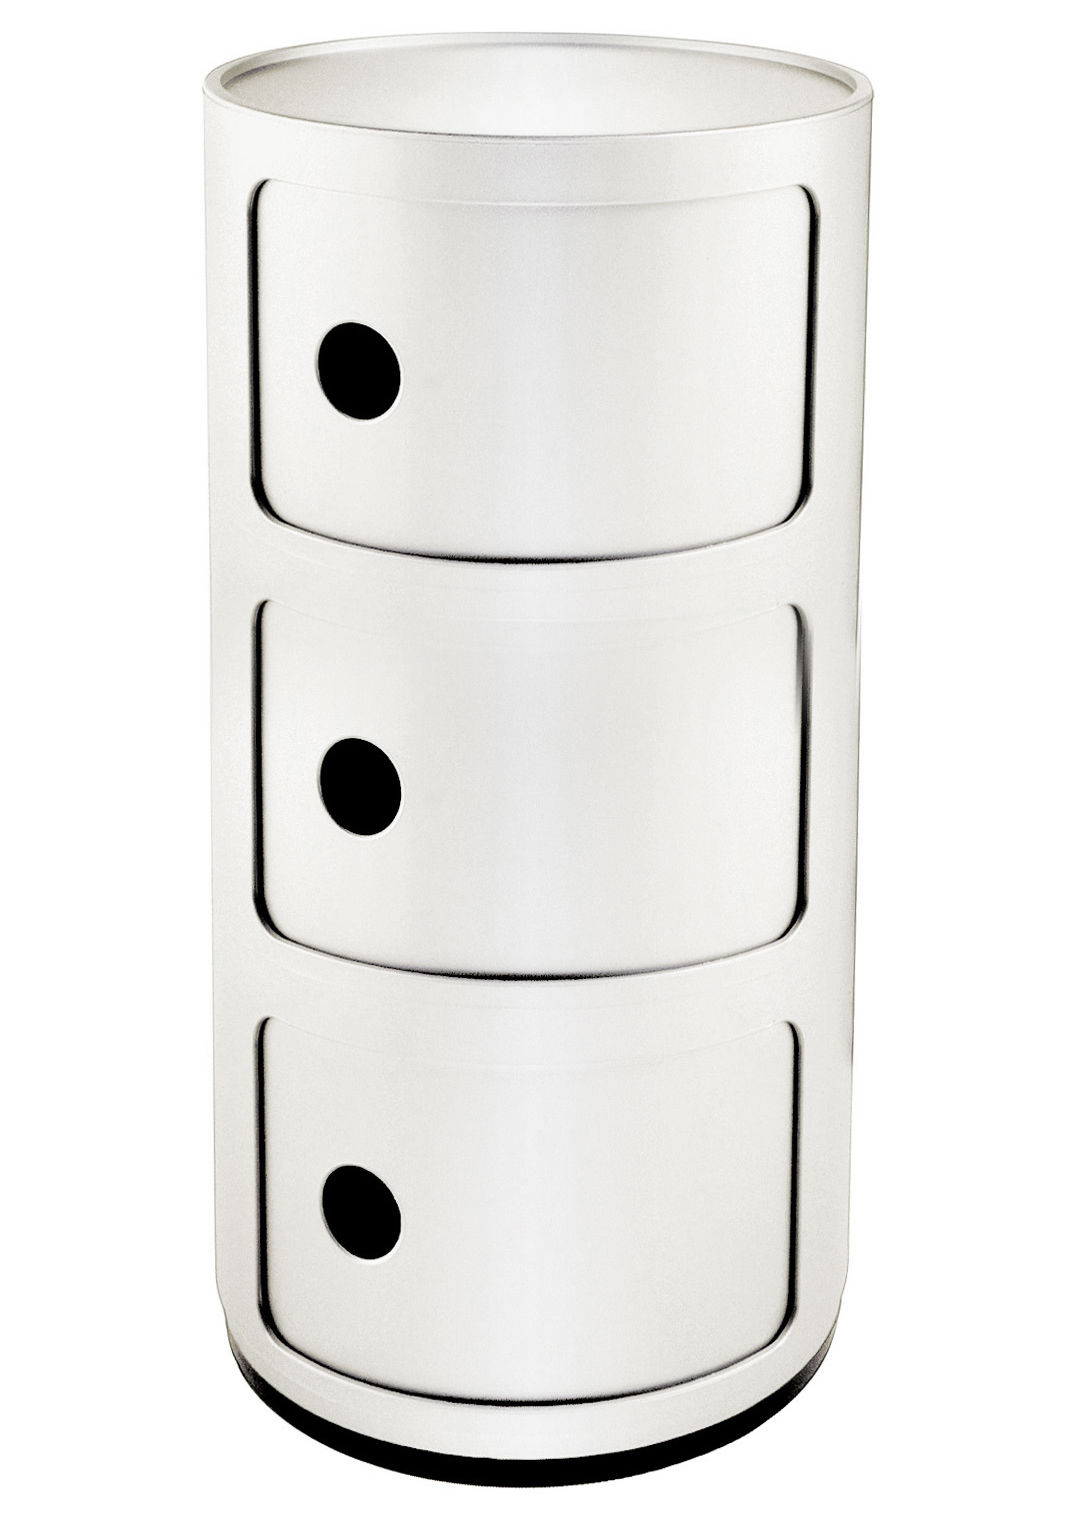 Meubles Made in Design - Meuble de rangement Componibili 3 tiroirs Kartell